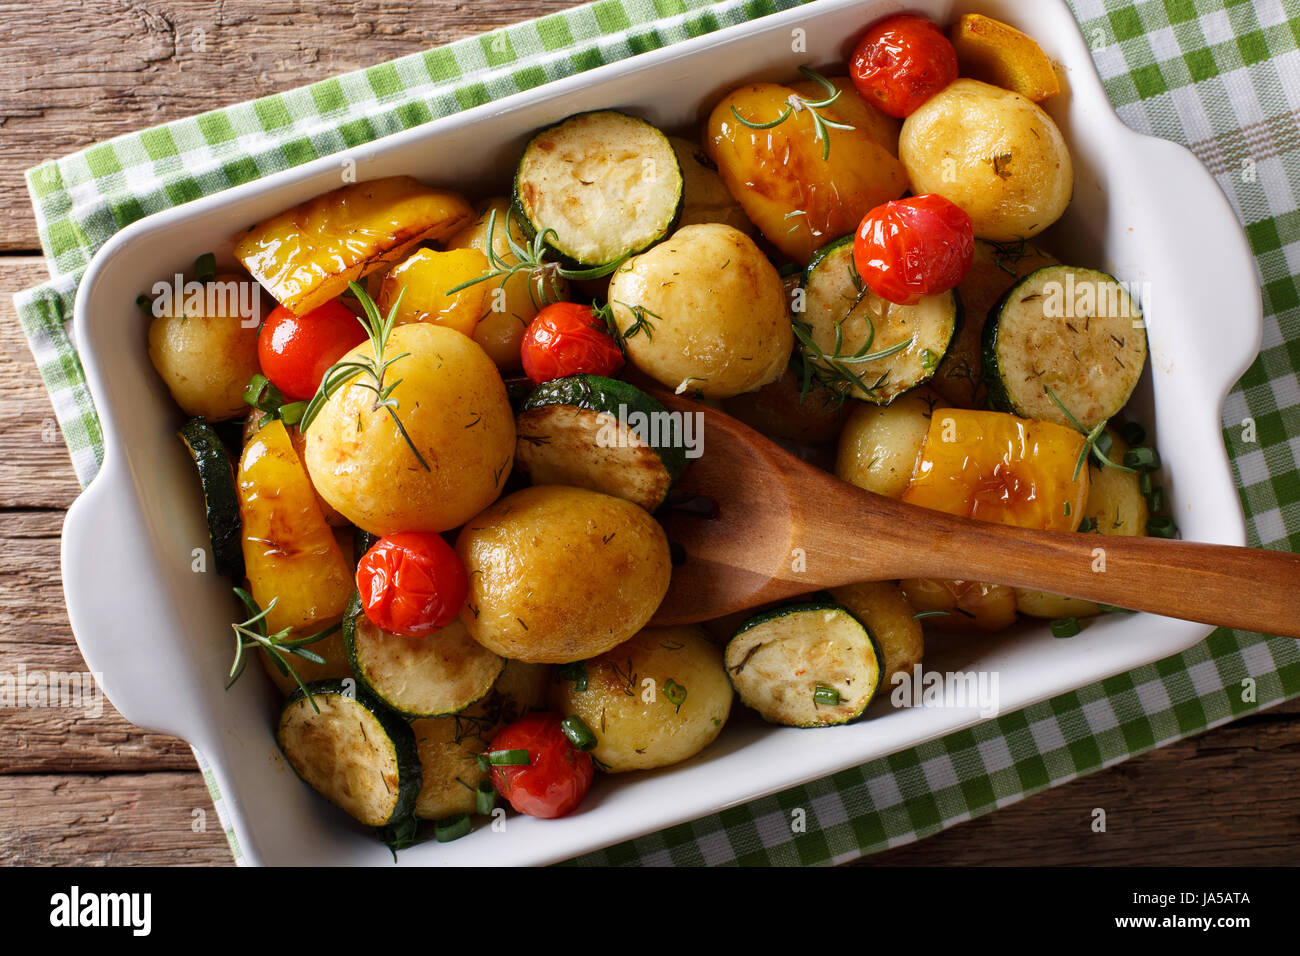 Cibo vegetariano: nuove patate al forno con zucchine, peperoni e pomodori vicino fino in una teglia. vista orizzontale dal di sopra Foto Stock